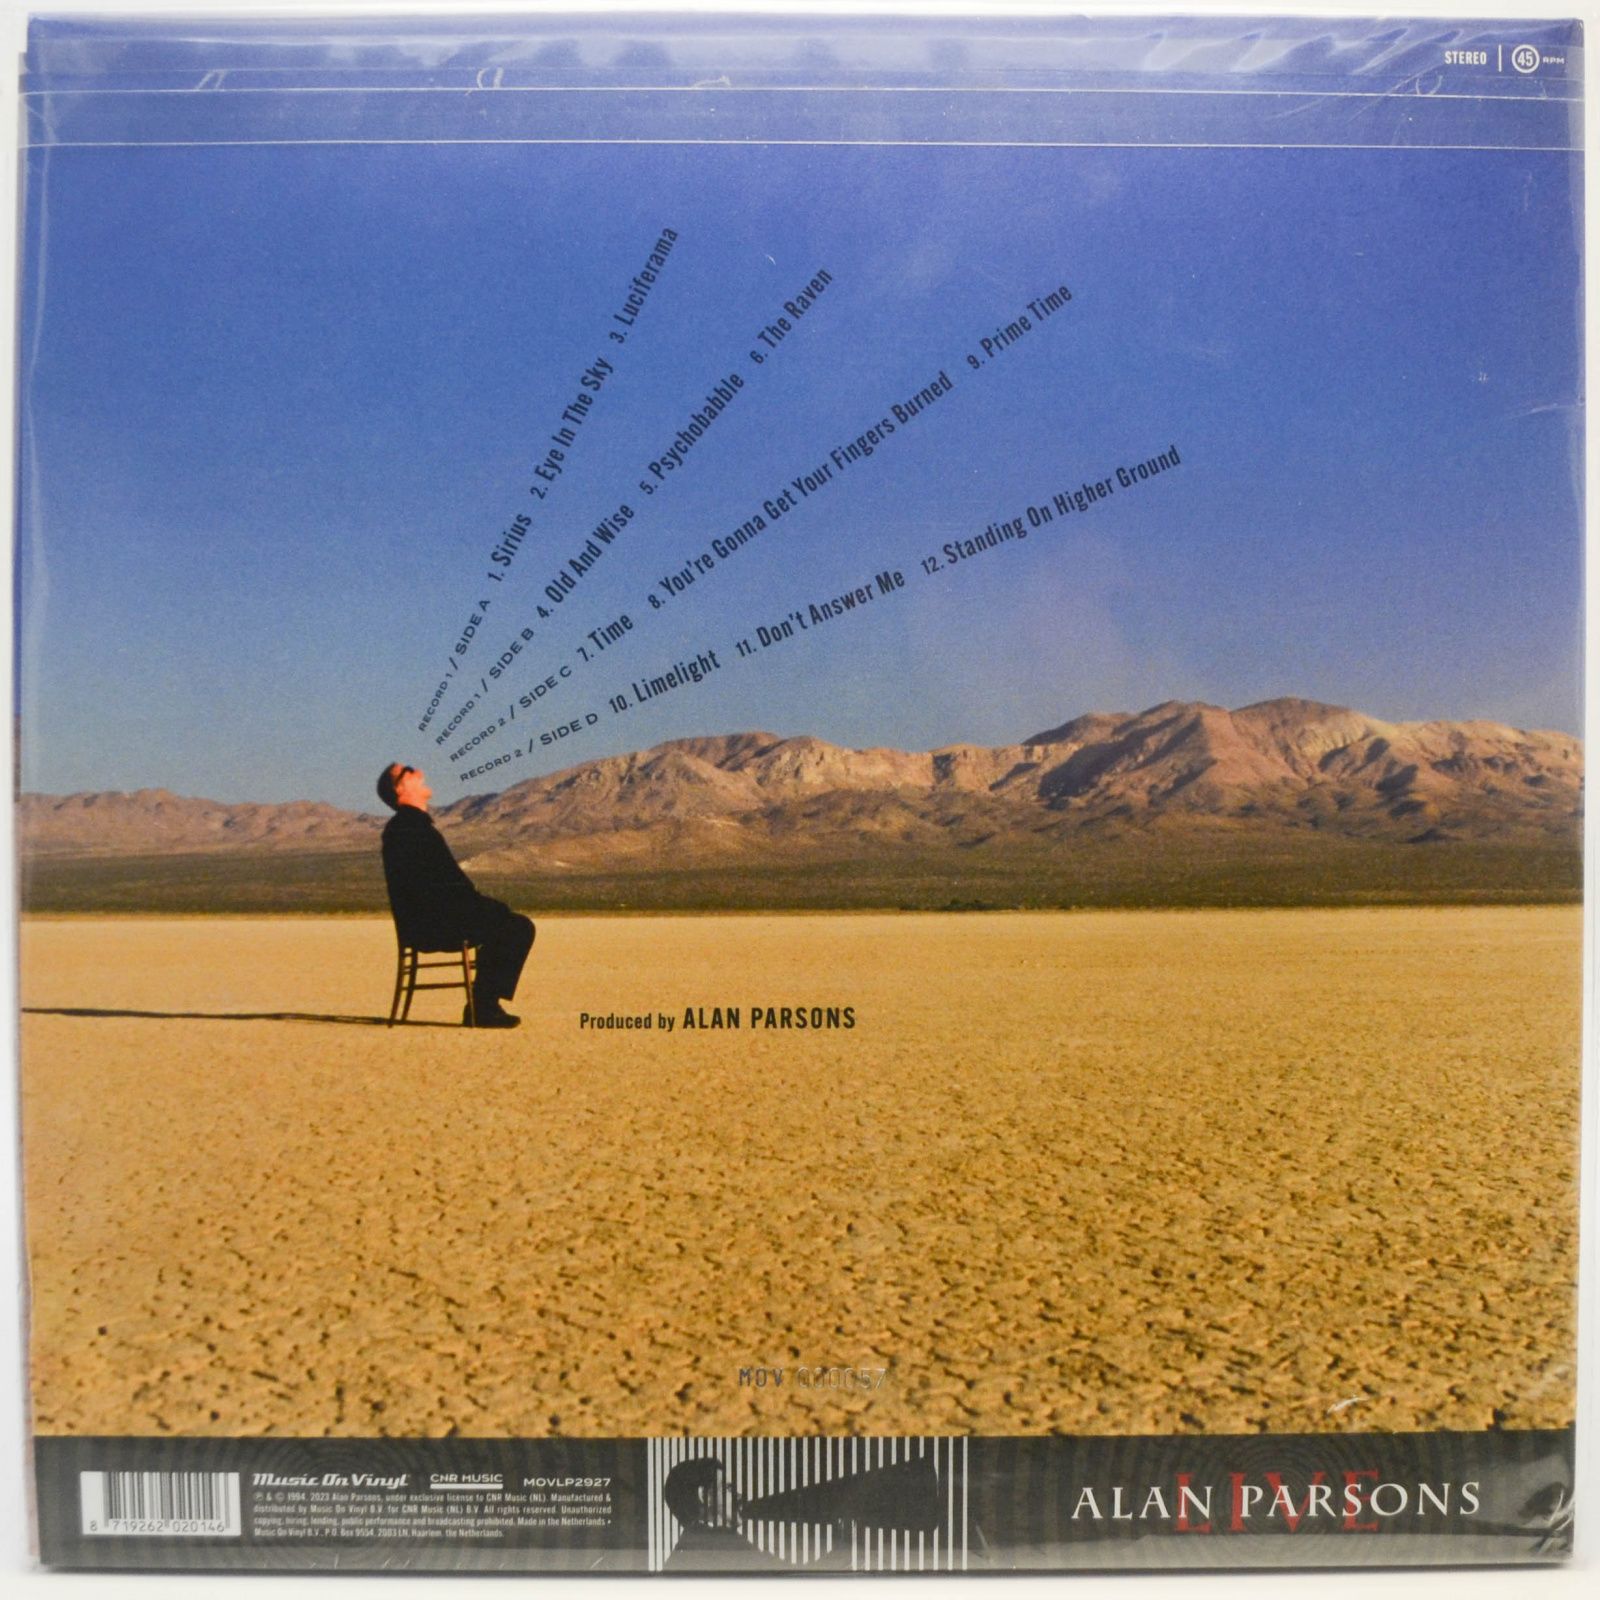 Alan Parsons — Live (2LP), 1994